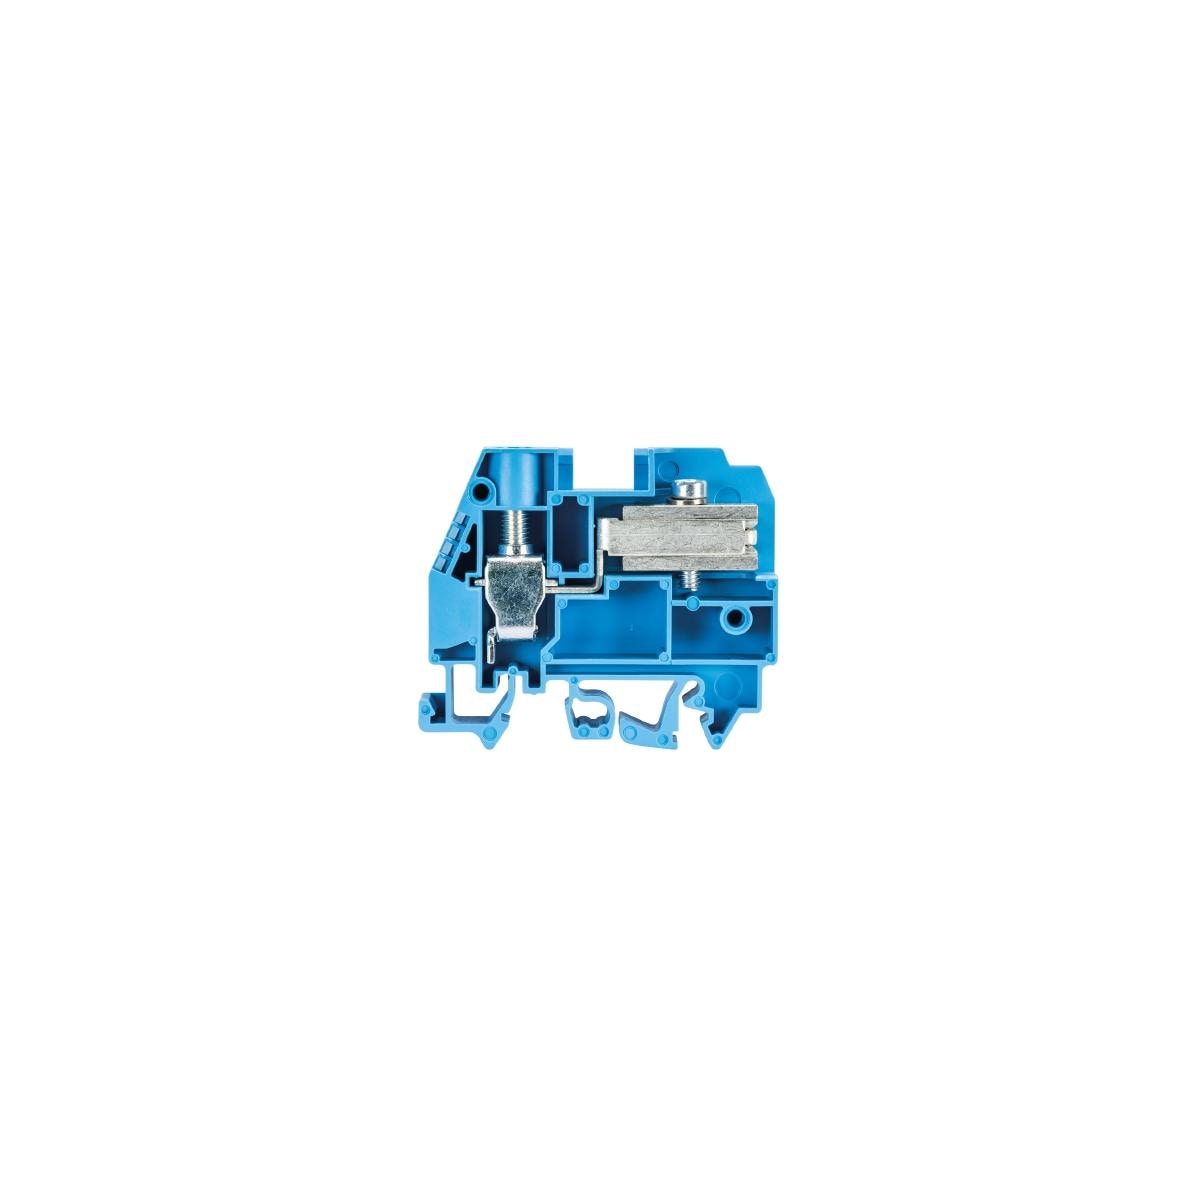 Wieland Electric NEUTRALLEITER-TRENNKLEMME WKI 10 ETK/U/V0, blau